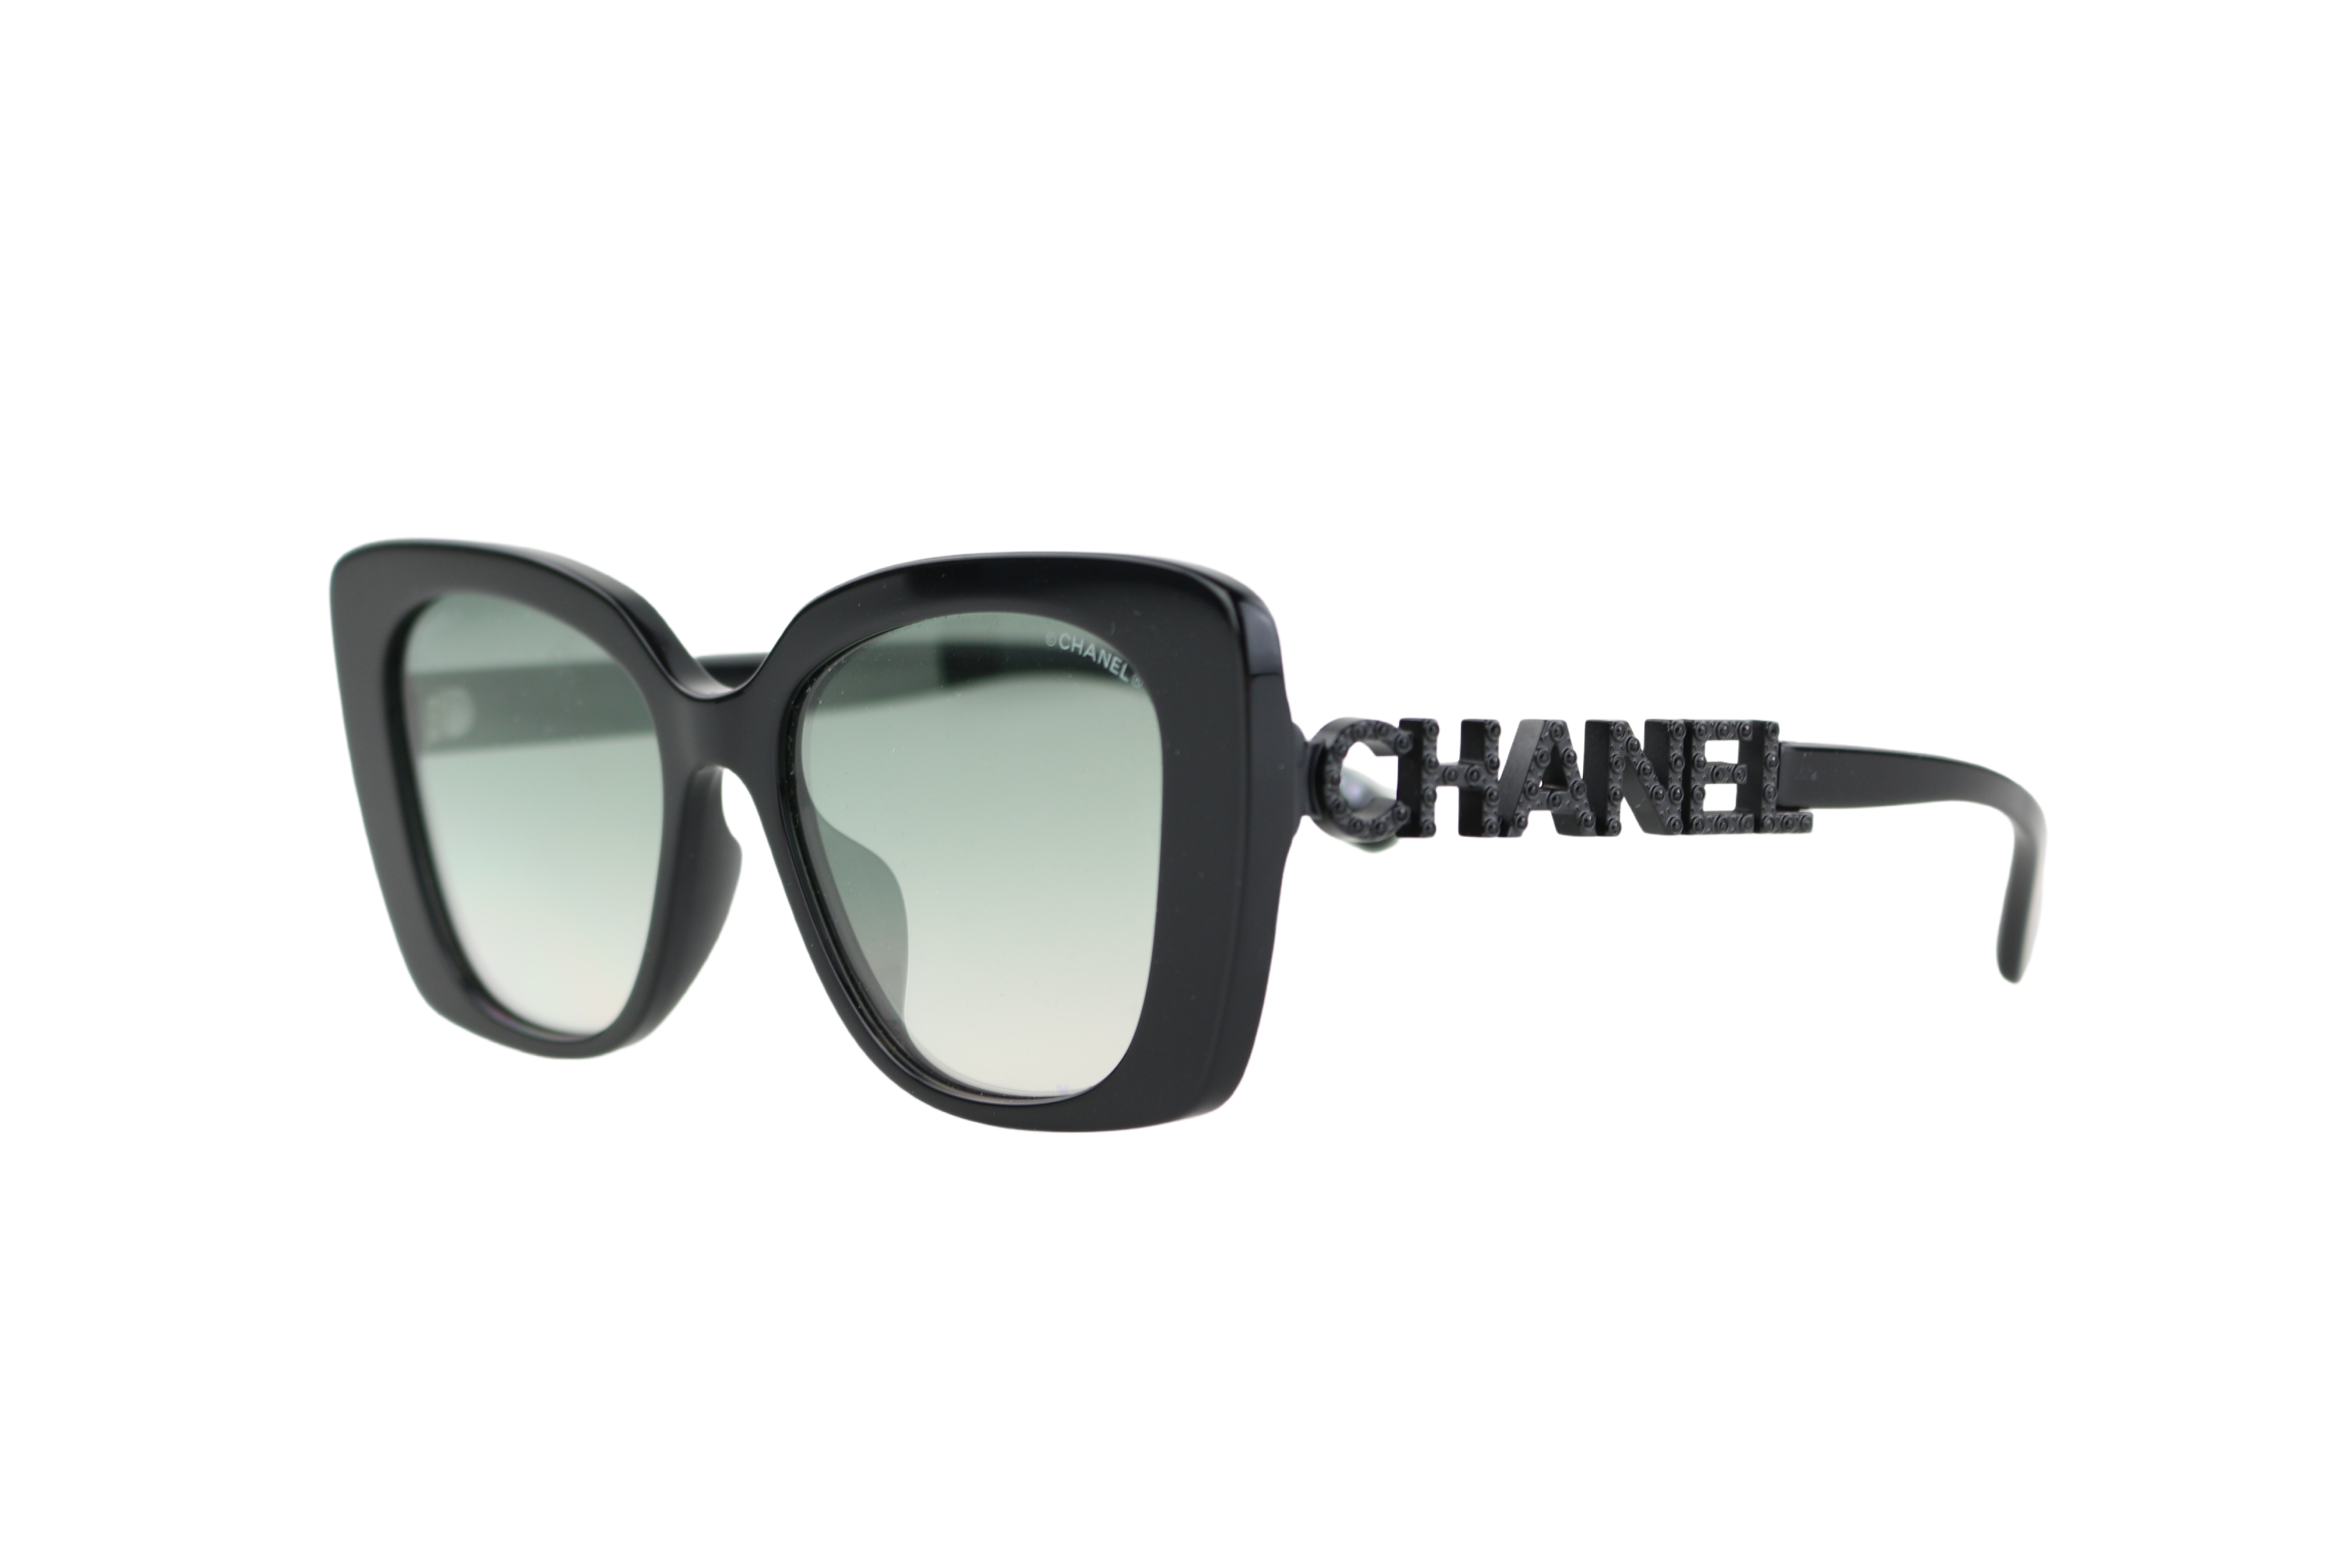 Sunglasses: Square Sunglasses, acetate & strass — Fashion, CHANEL